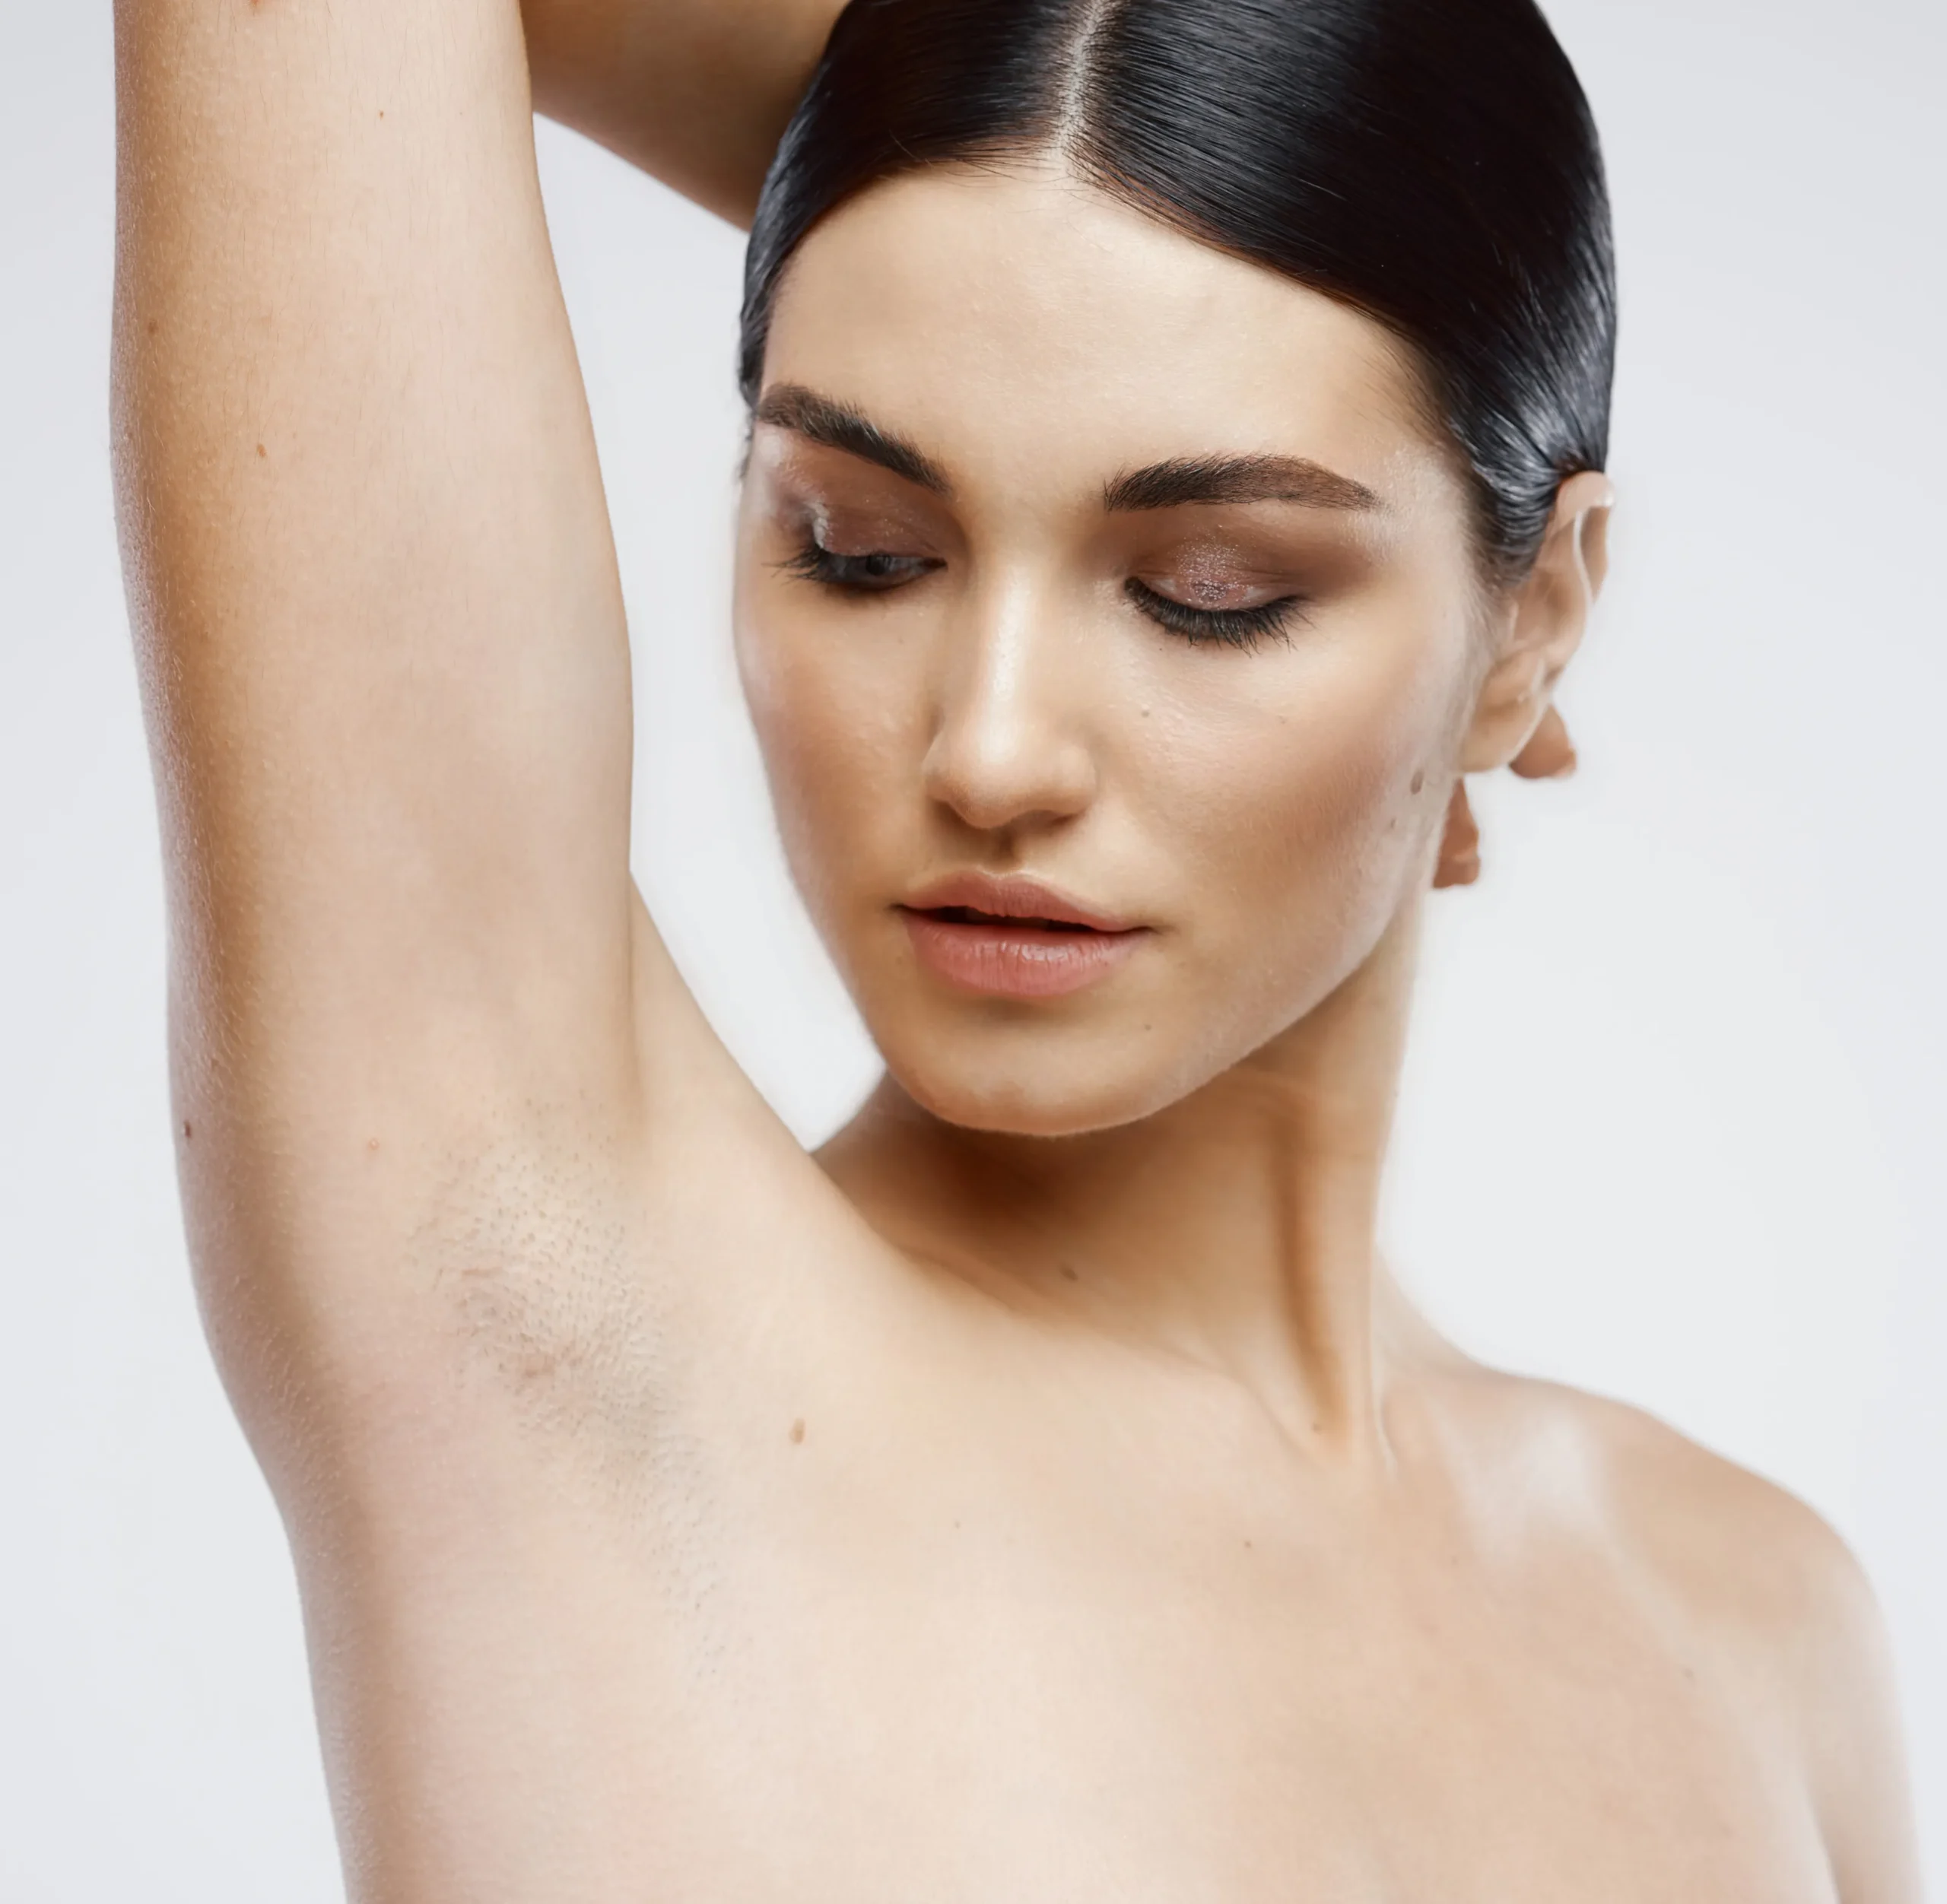 Kosmetisk behandling ved Remove hudklinikk, hvor en terapeut utfører laser hårfjerning under armen på en kvinnelig klient.